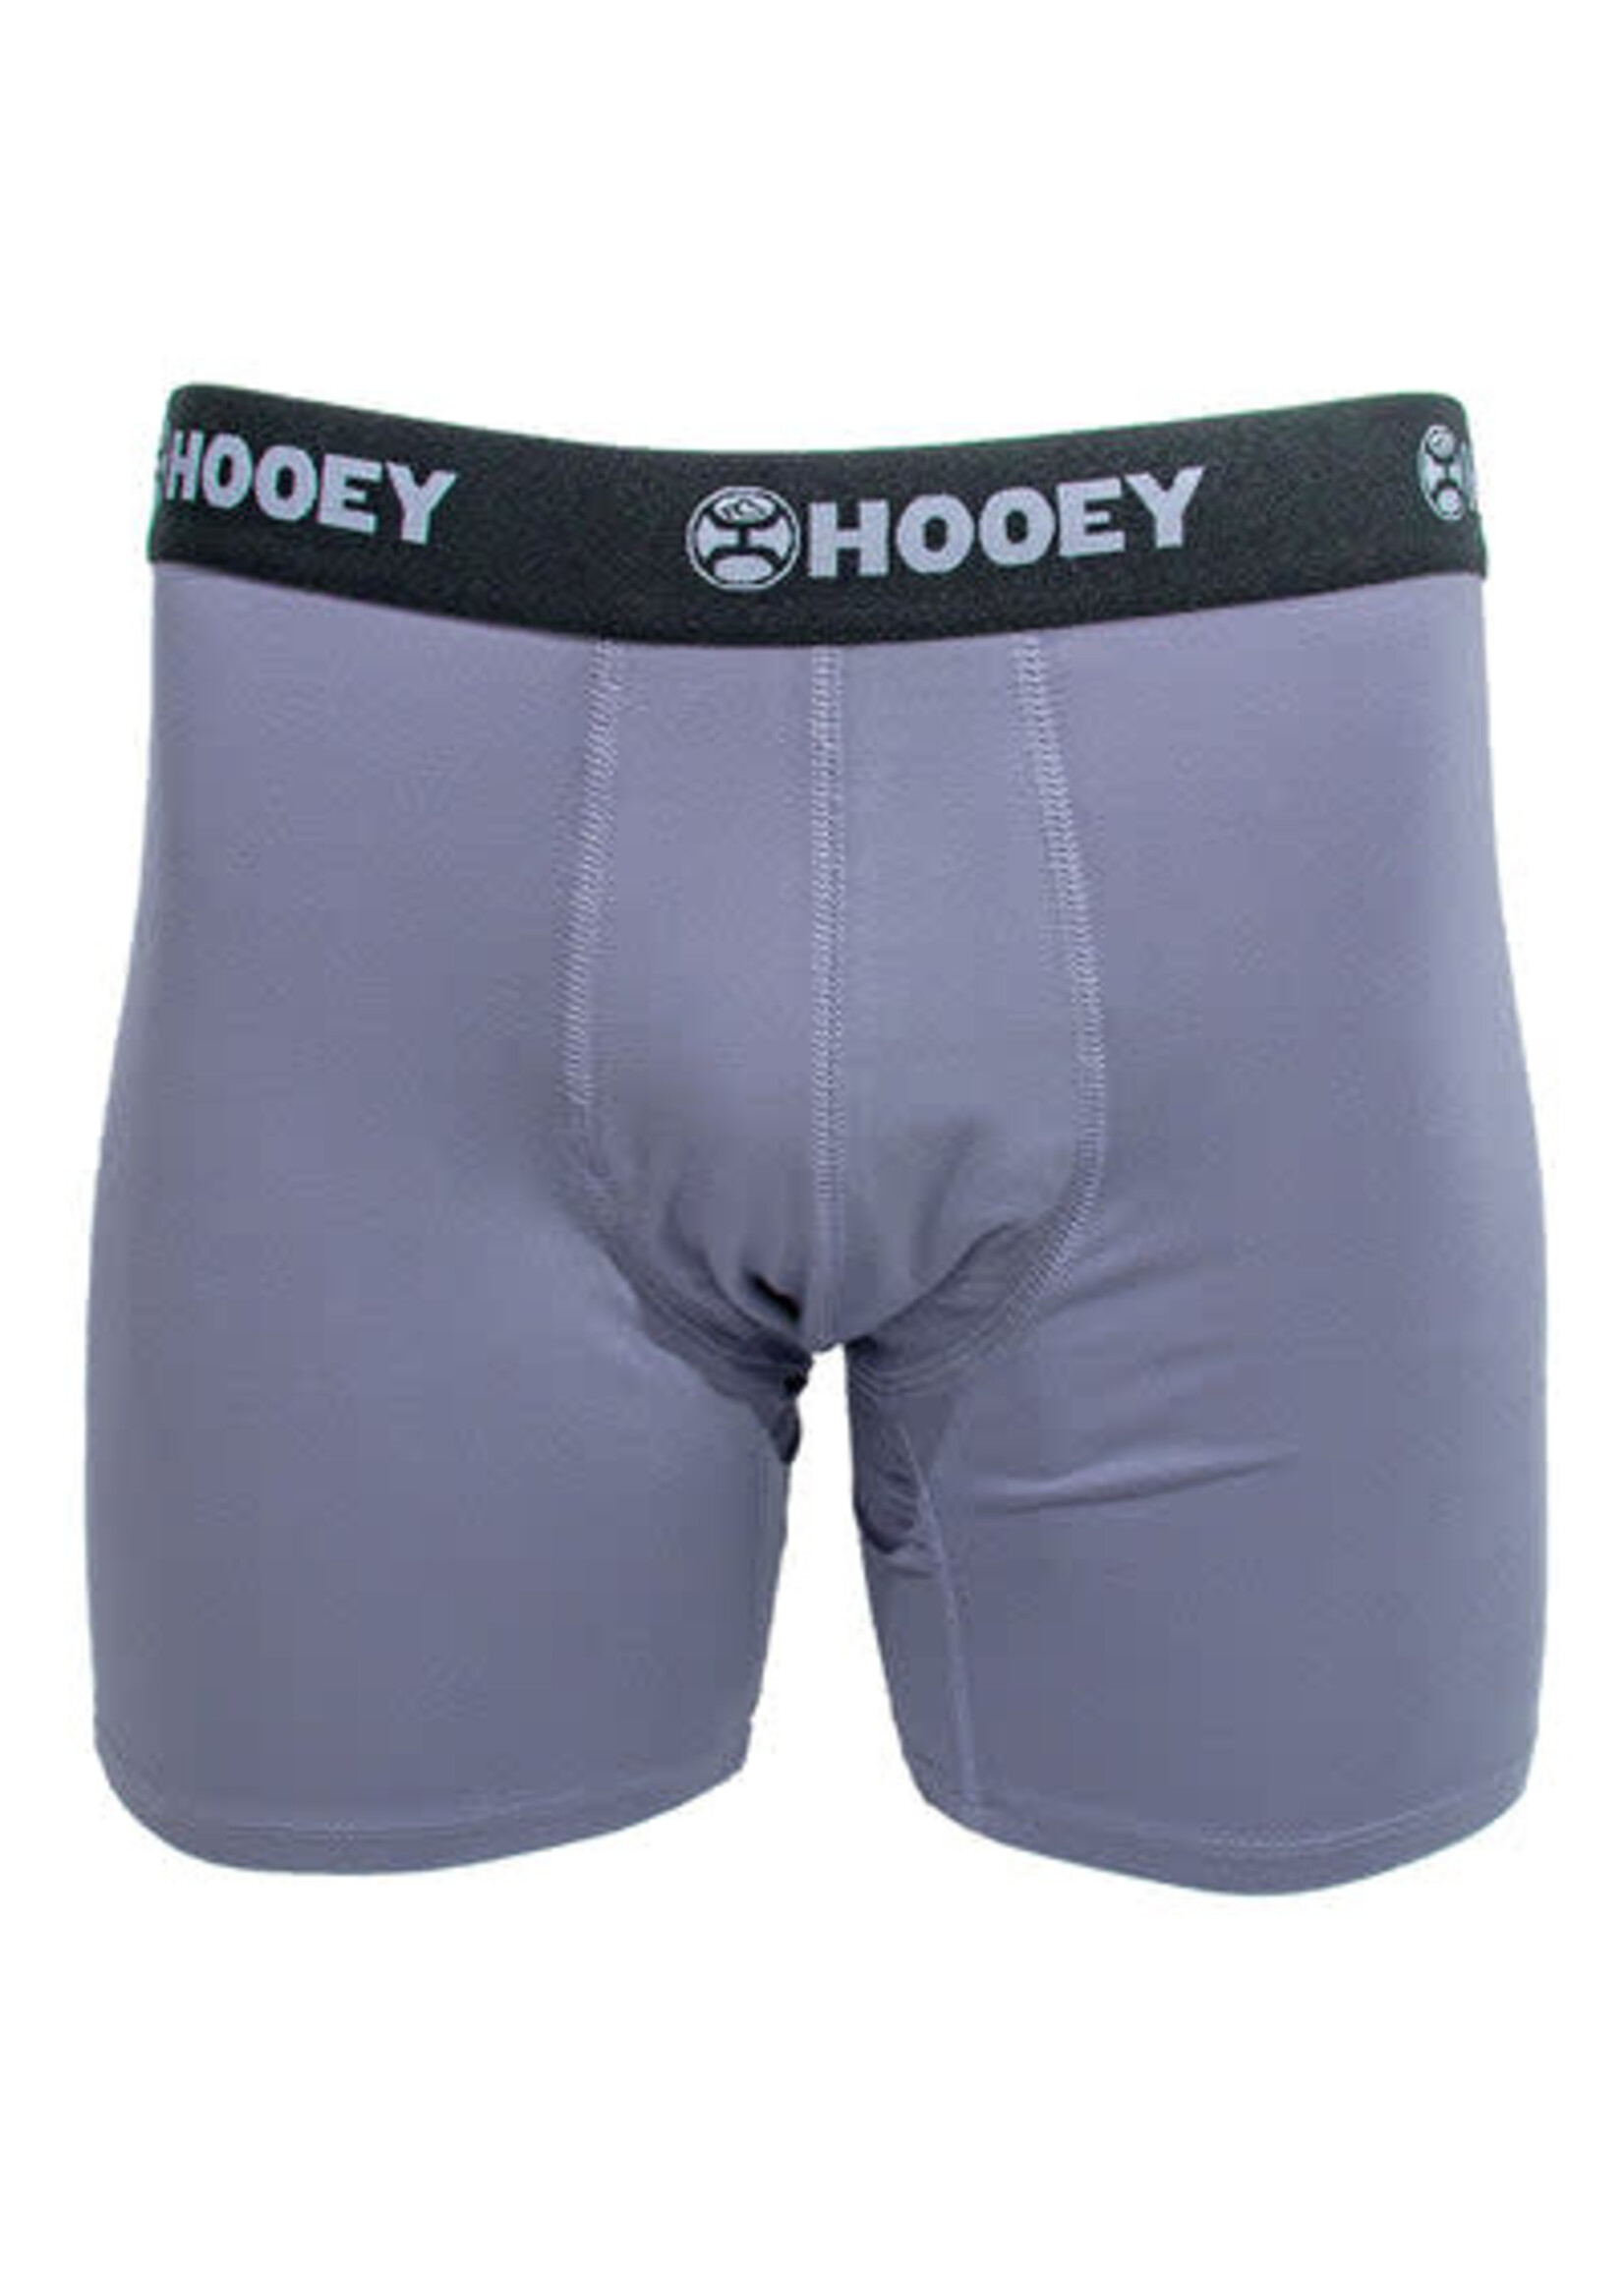 Hooey Briefs Mist Grey & Black 2 pack